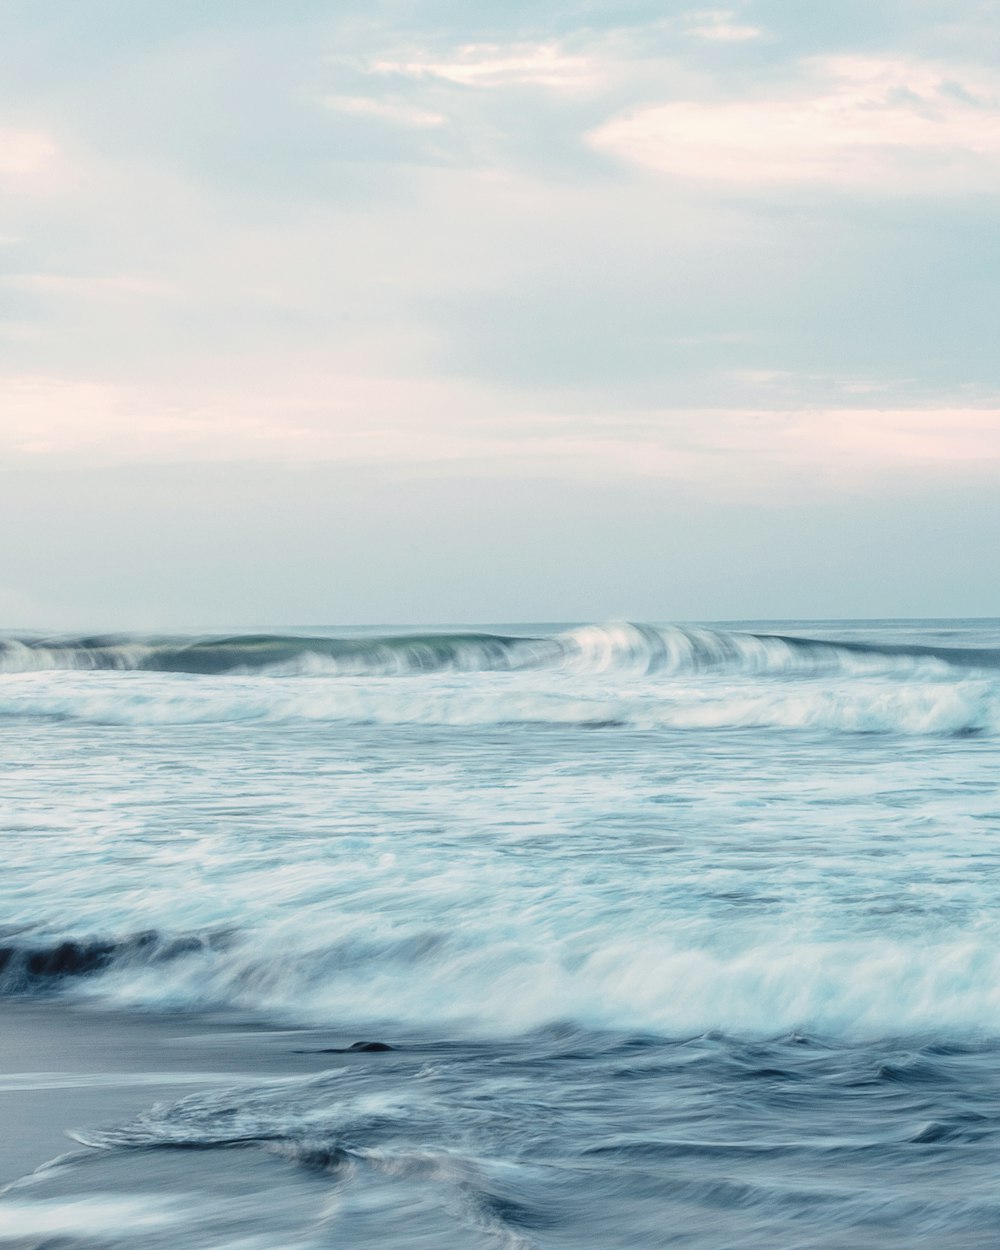 Photographie en accéléré de la vague de l’océan